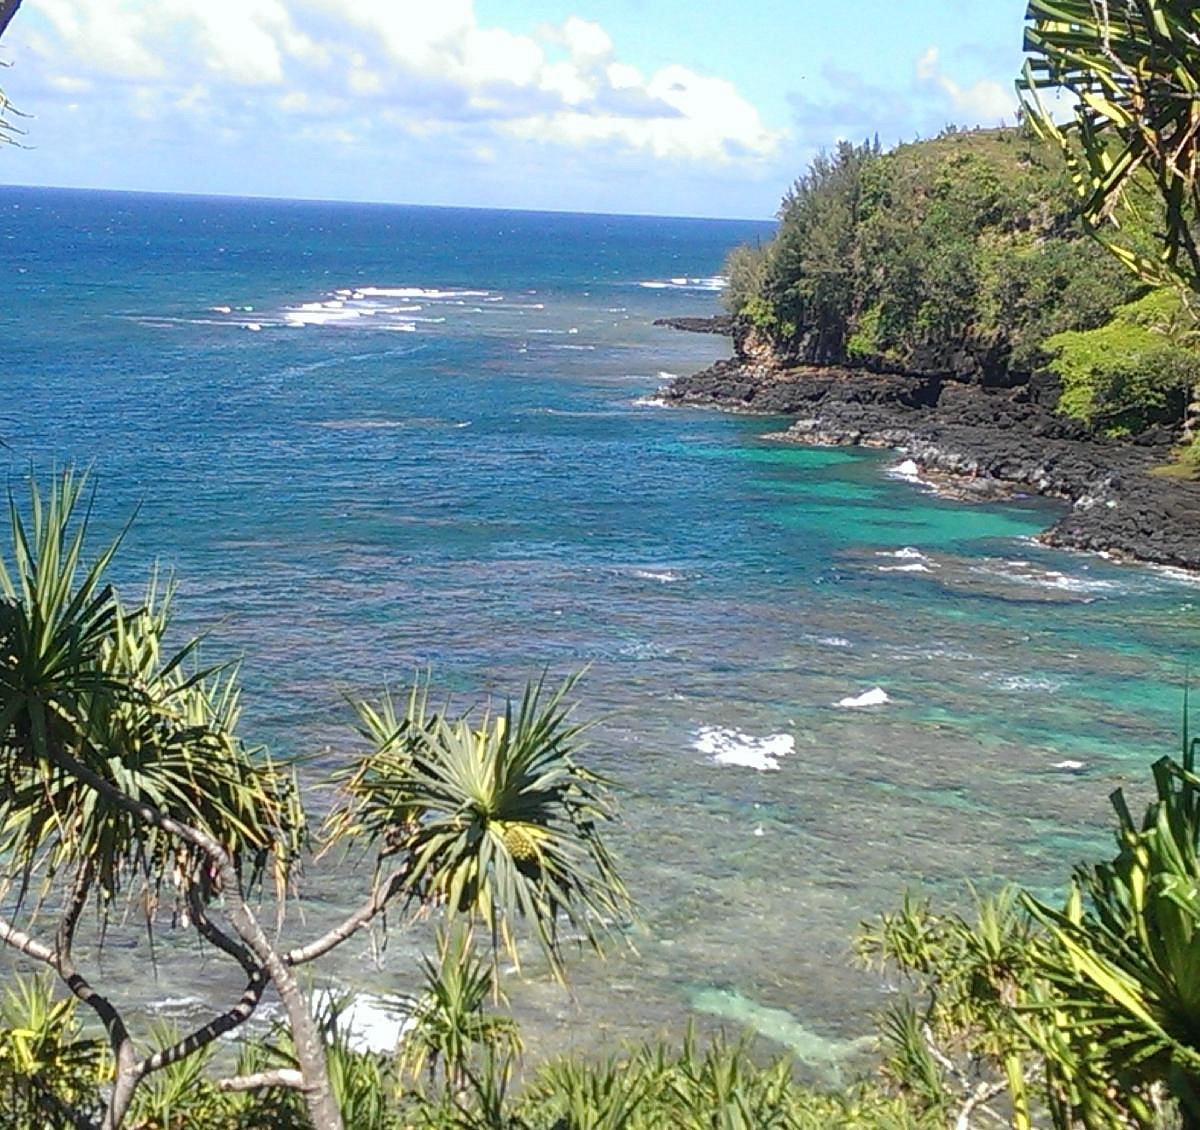 How to Get to Turtle Cove Kauai